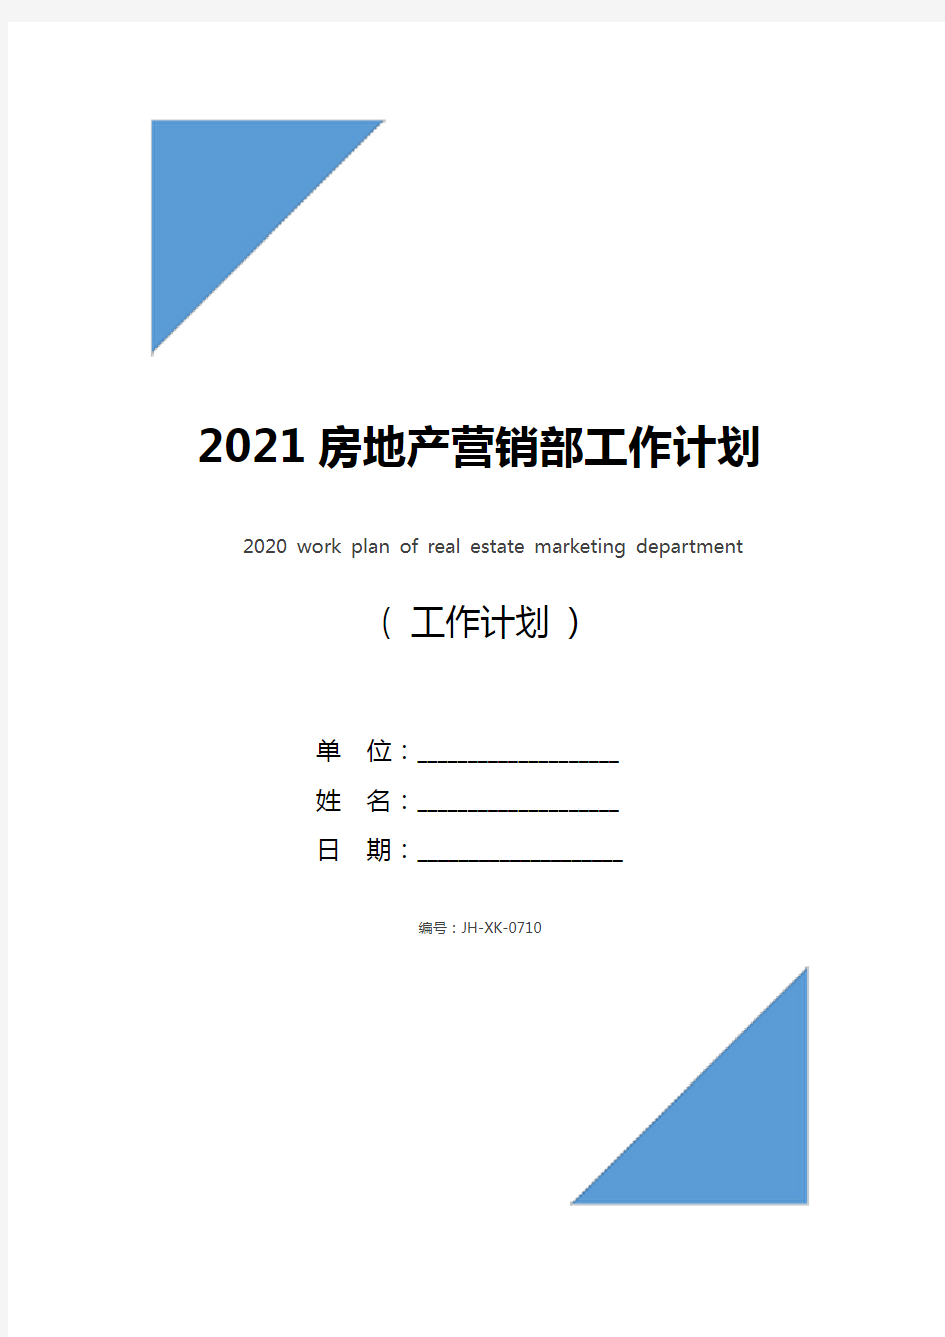 2021房地产营销部工作计划(标准版)